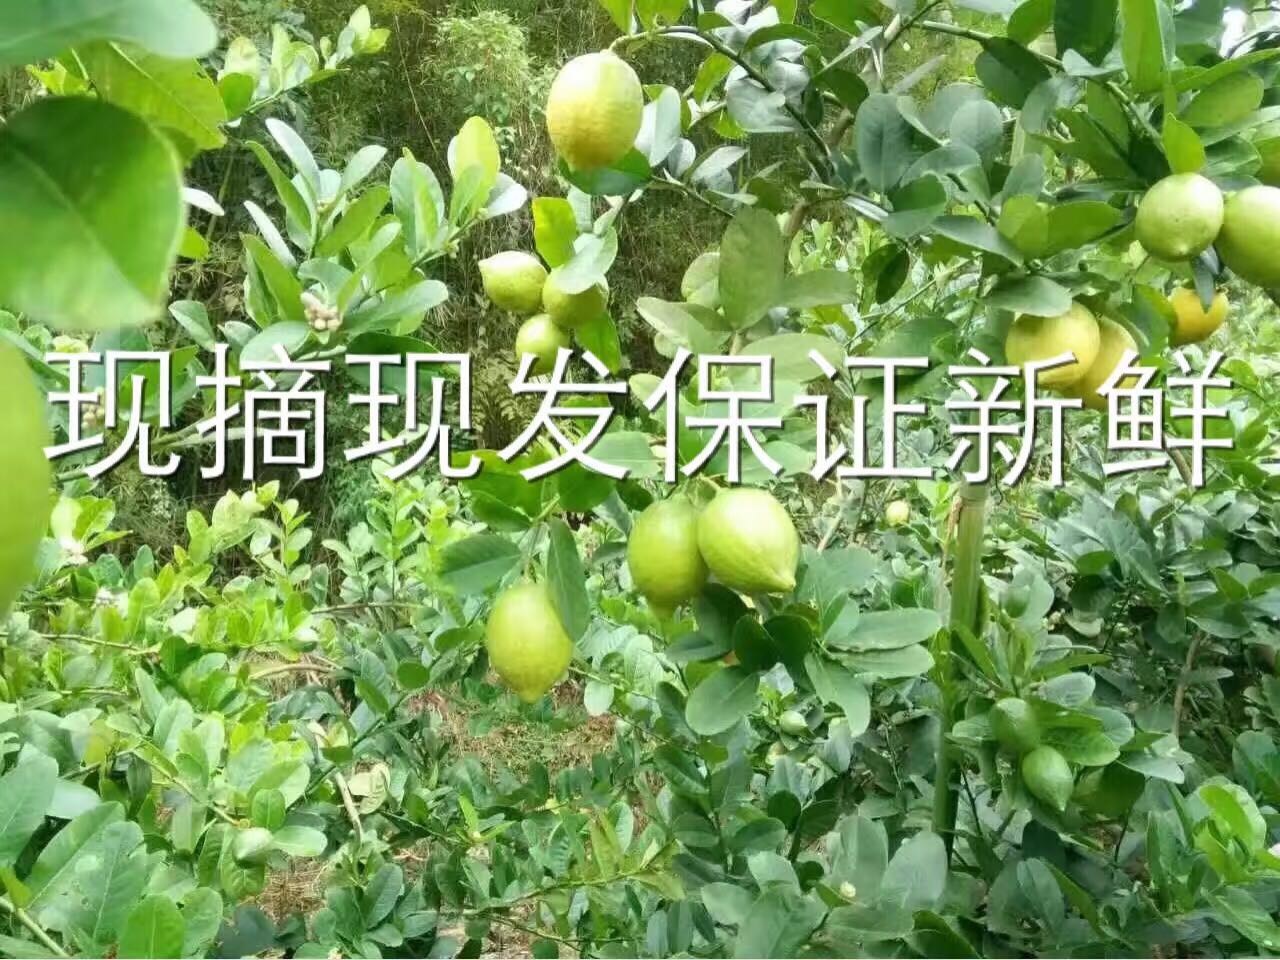 香水柠檬批发 台湾无籽香水柠檬 四季香水柠檬批发 台湾无籽香水柠檬批发